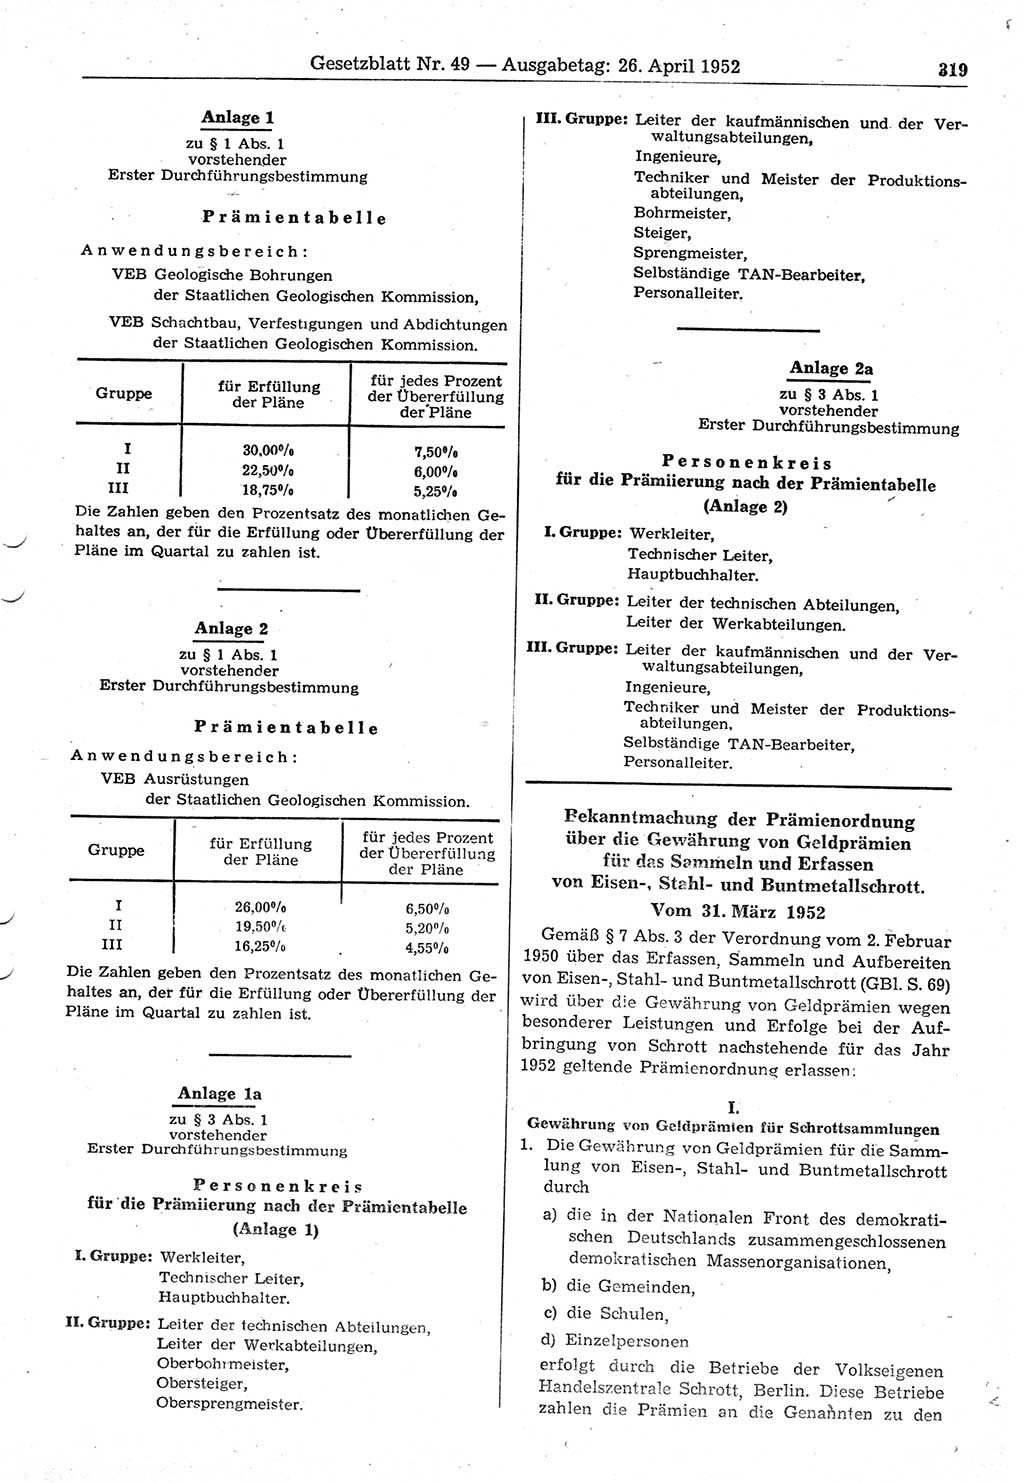 Gesetzblatt (GBl.) der Deutschen Demokratischen Republik (DDR) 1952, Seite 319 (GBl. DDR 1952, S. 319)